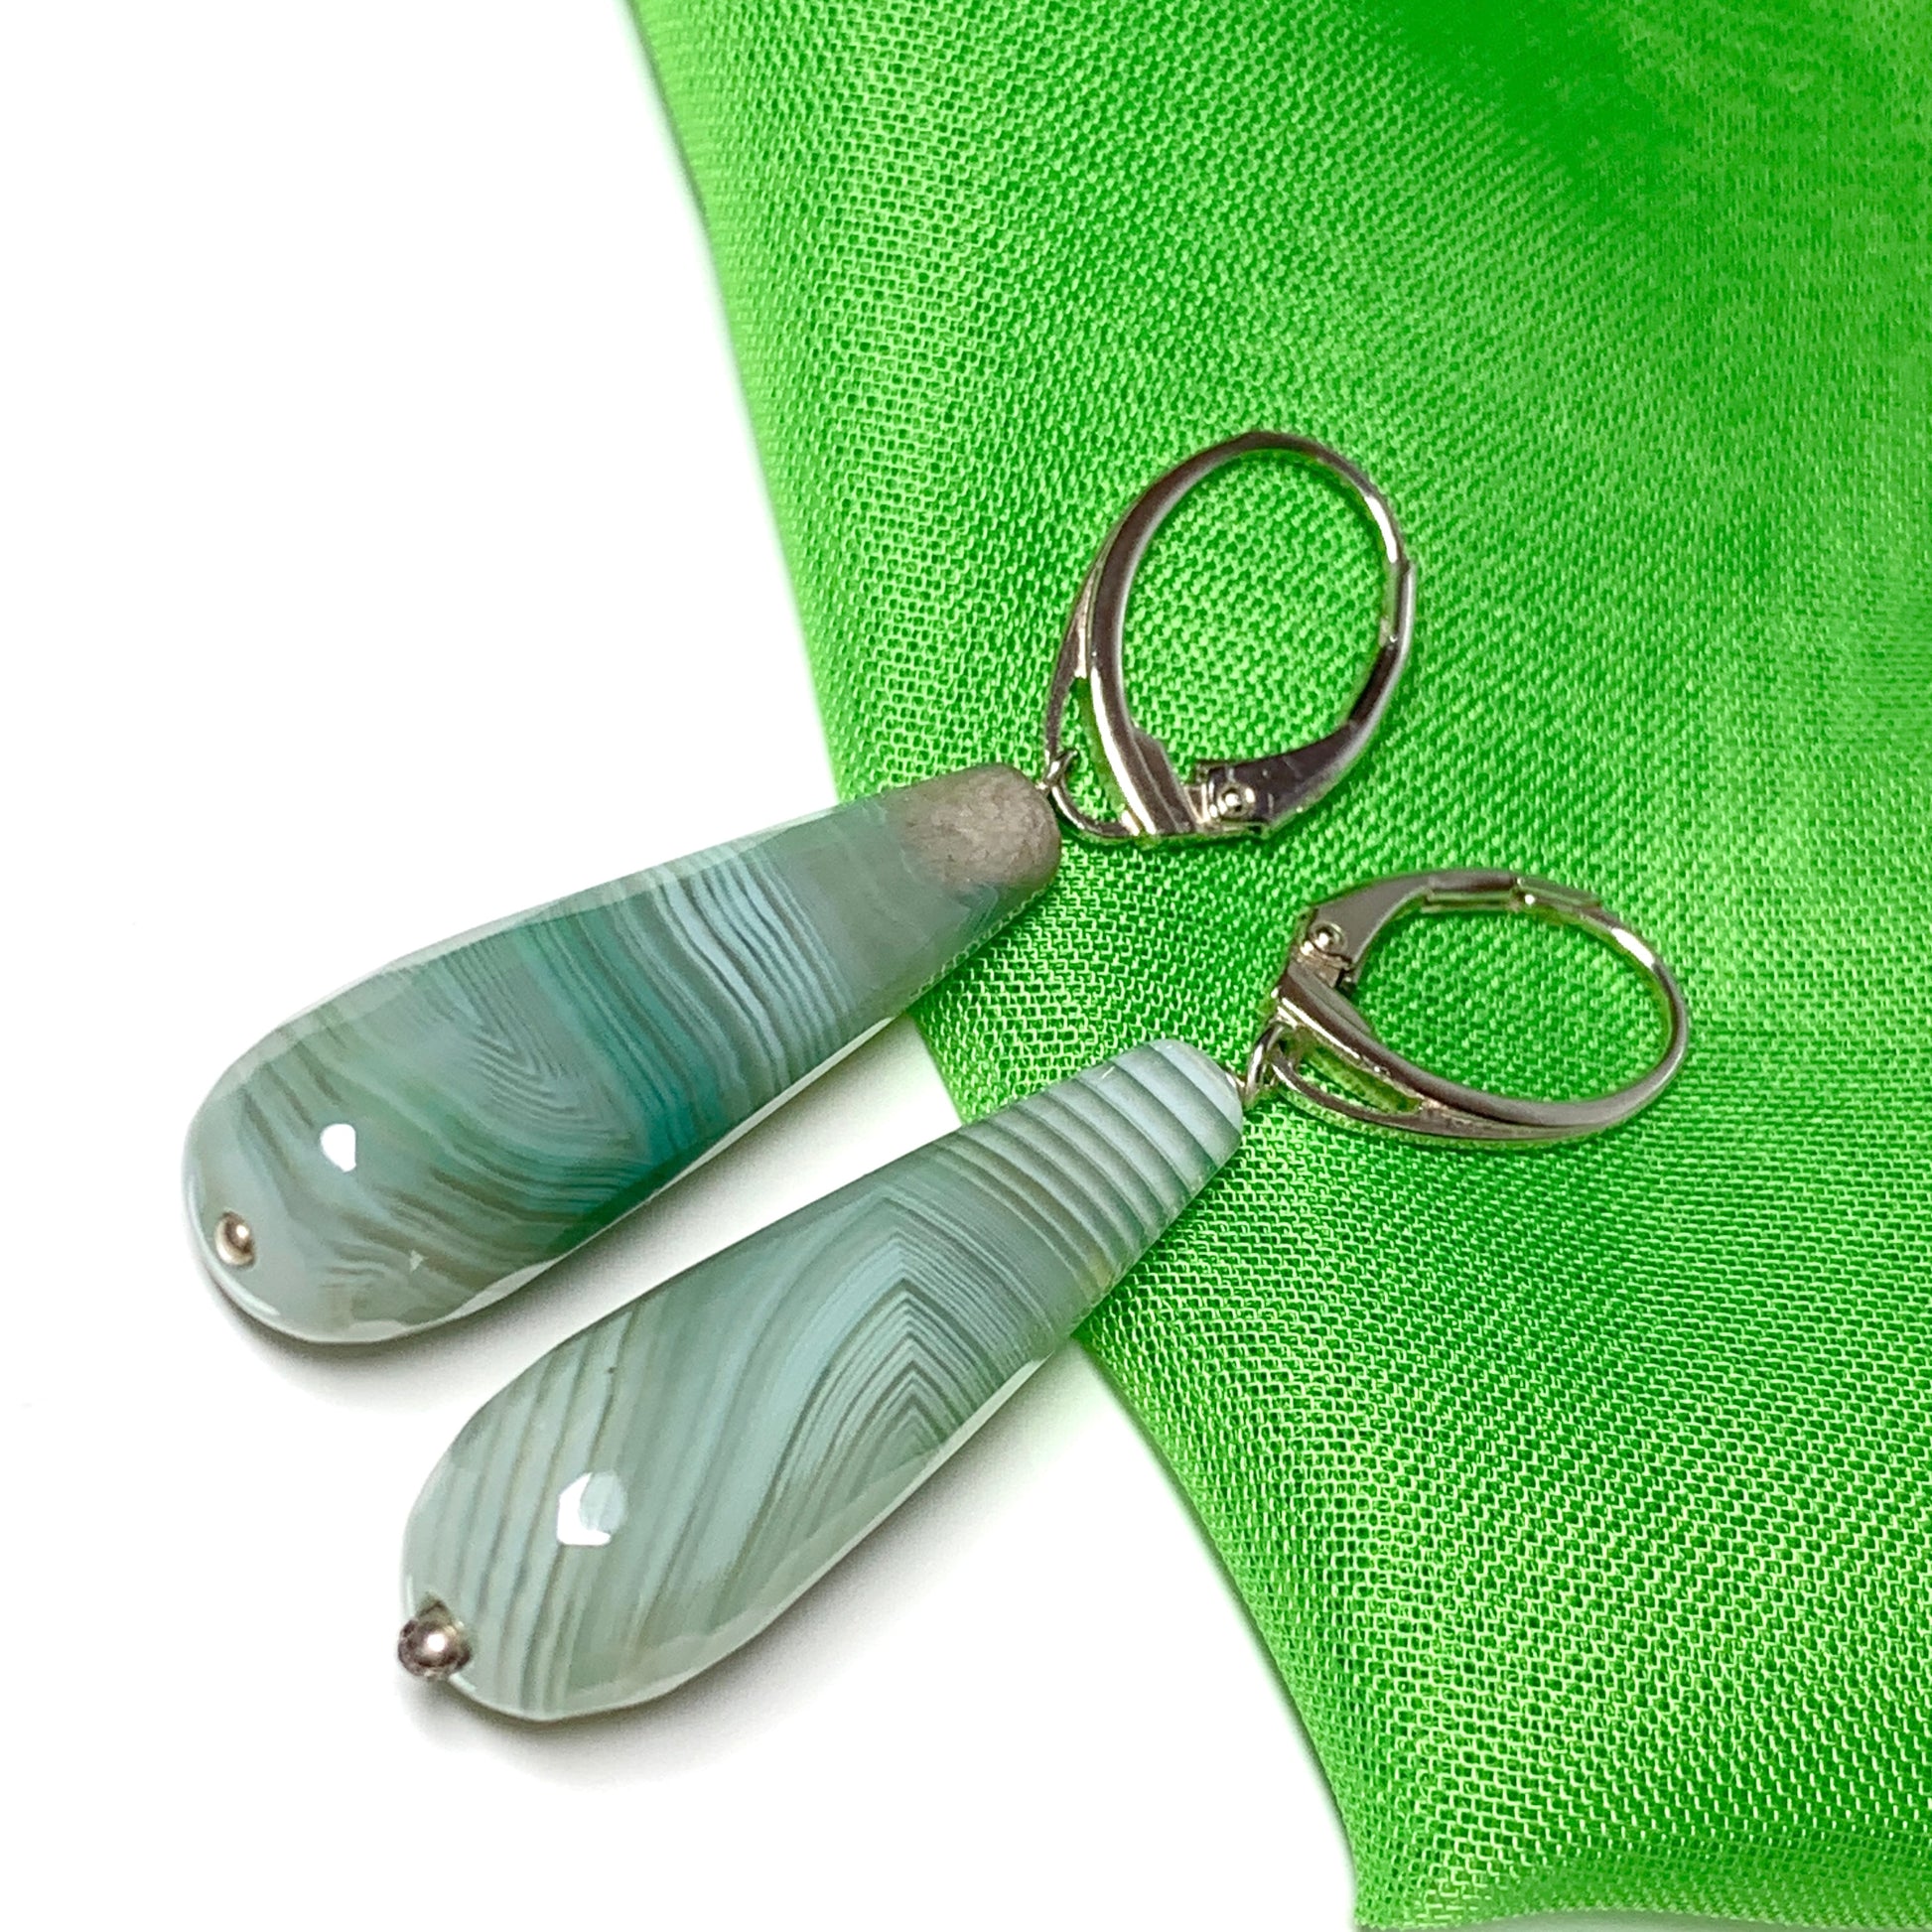 Light green agate teardrop shaped long drop earrings